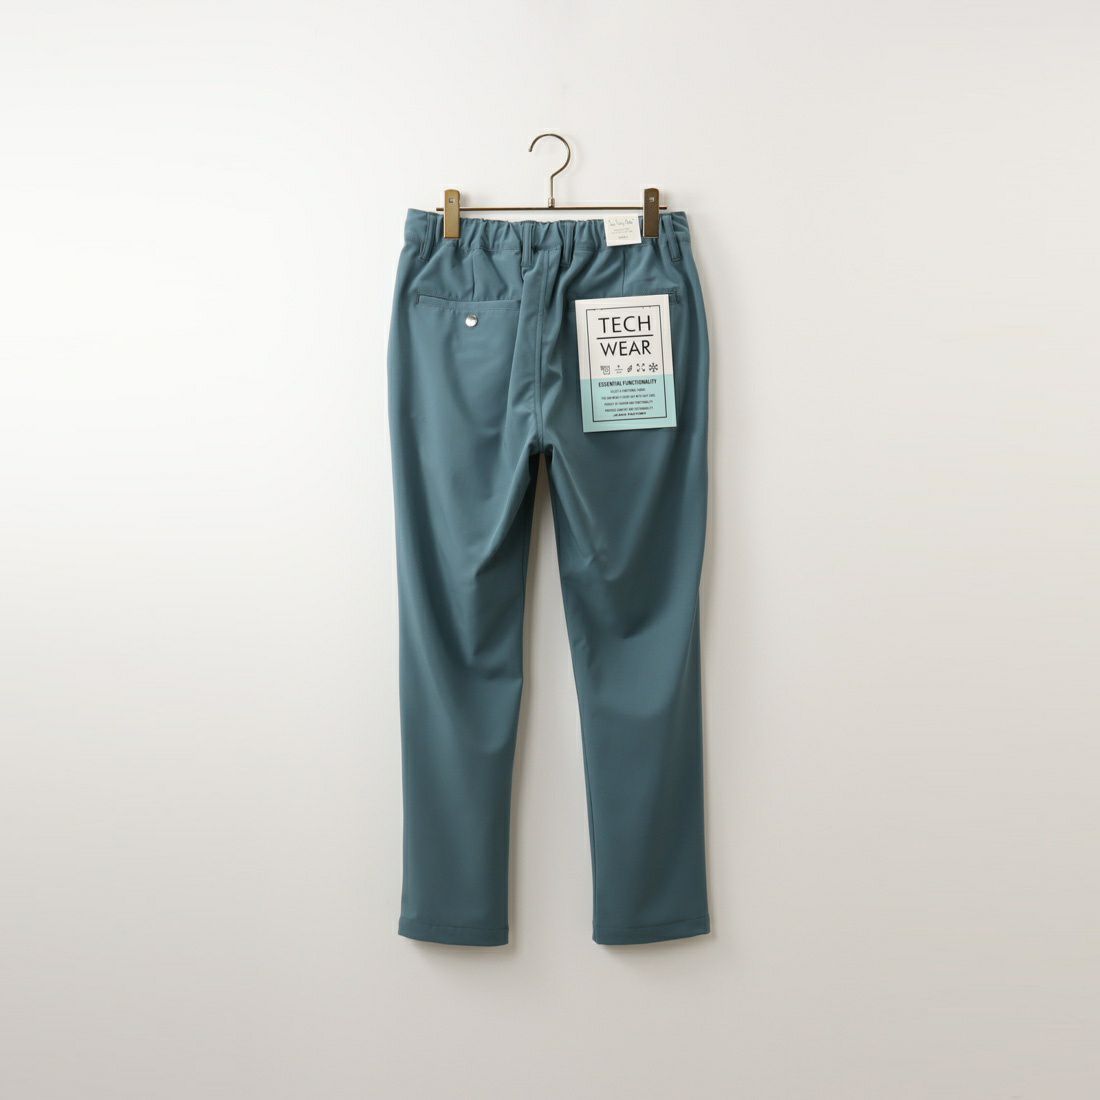 Jeans Factory Clothes [ジーンズファクトリークローズ] ポリエステルレーヨン2WAYギャバストレッチ1Pイージートラウザー [JFC-231-024] 05 BLUE